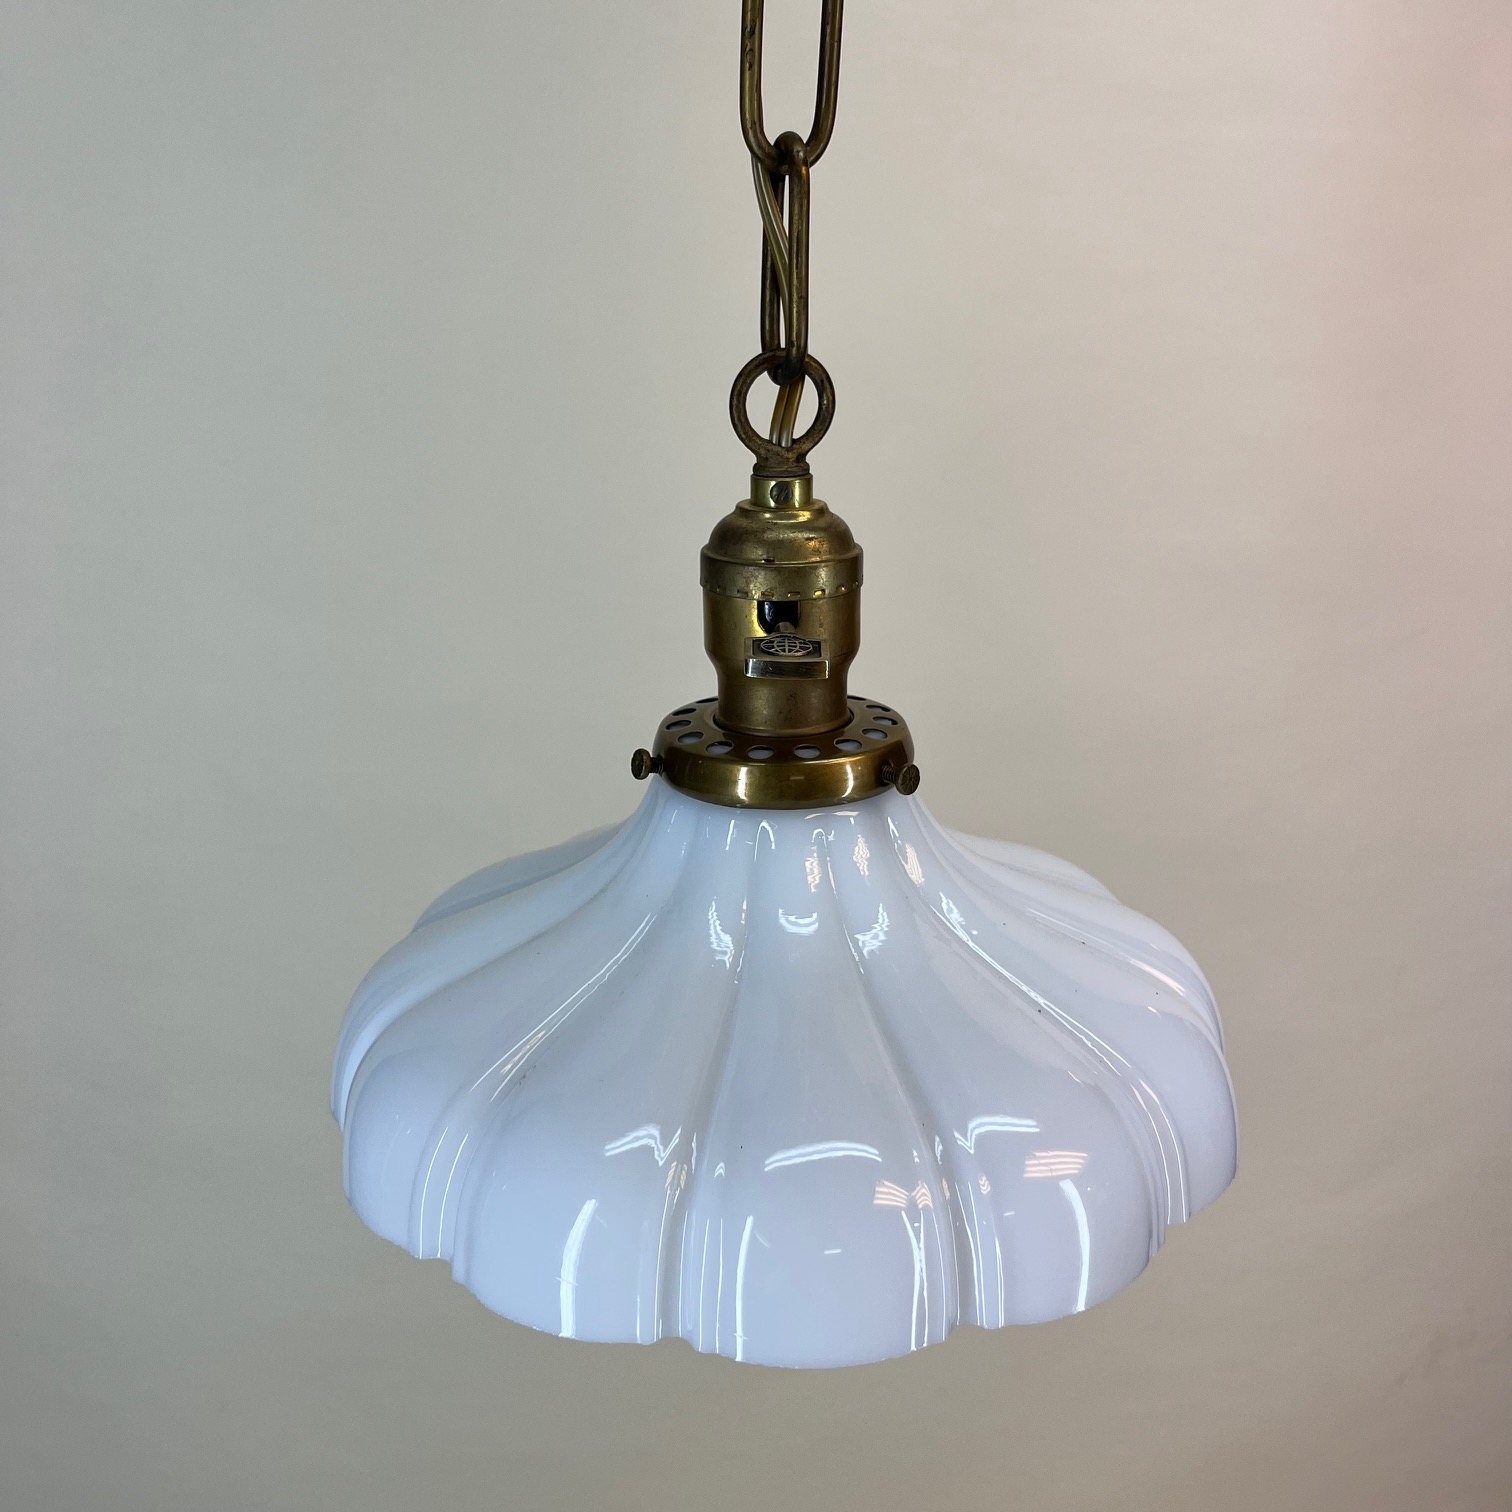 Opal Pendant Lamp ø30cm White/Brass - House Doctor